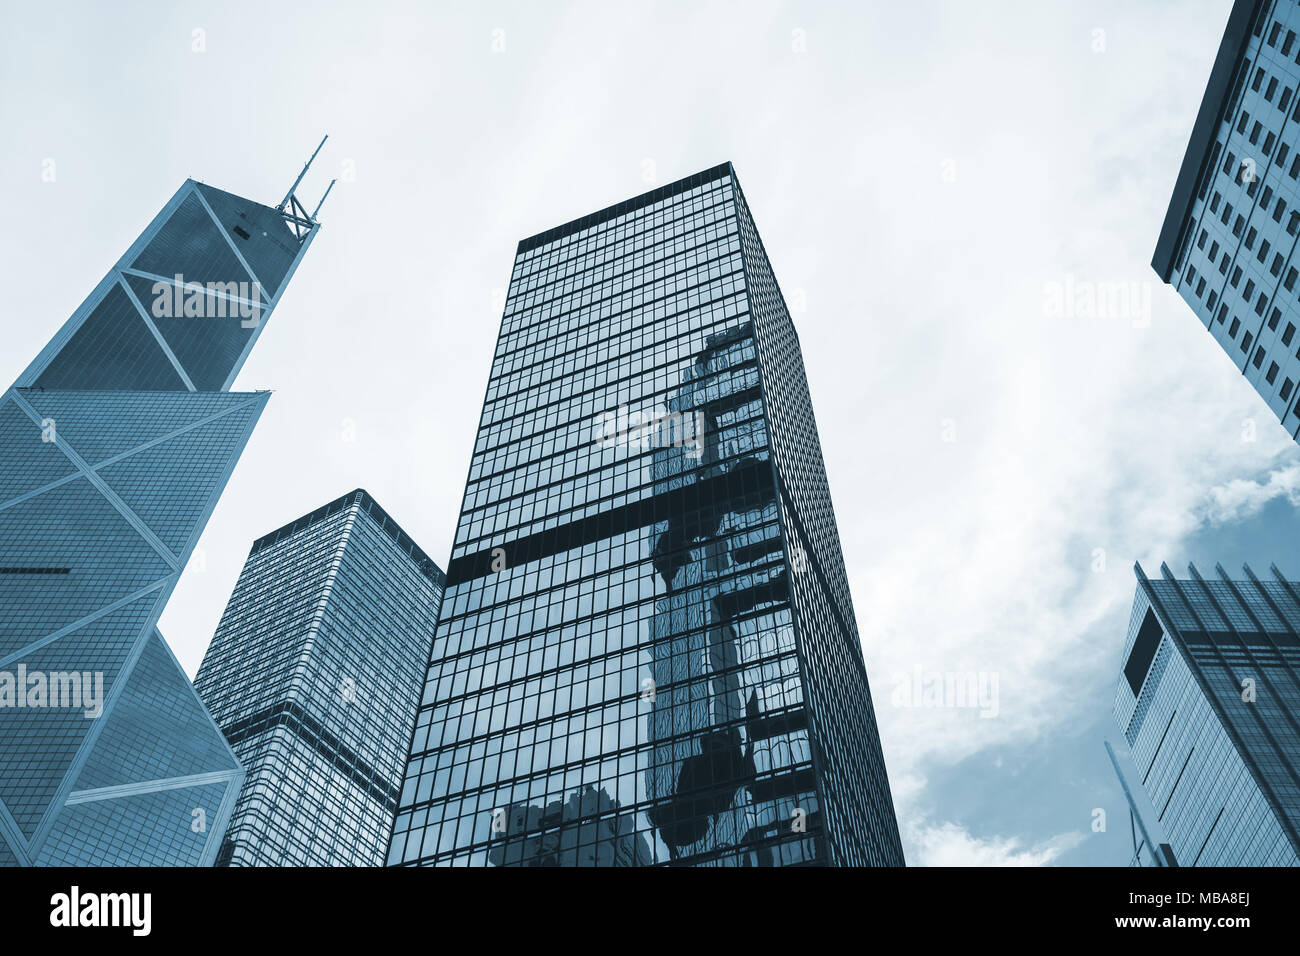 Die moderne Skyline der Stadt mit Wolkenkratzern, hohes Bürogebäude von Hong Kong. Blau getönten Schwarz-Weiß-Foto Stockfoto